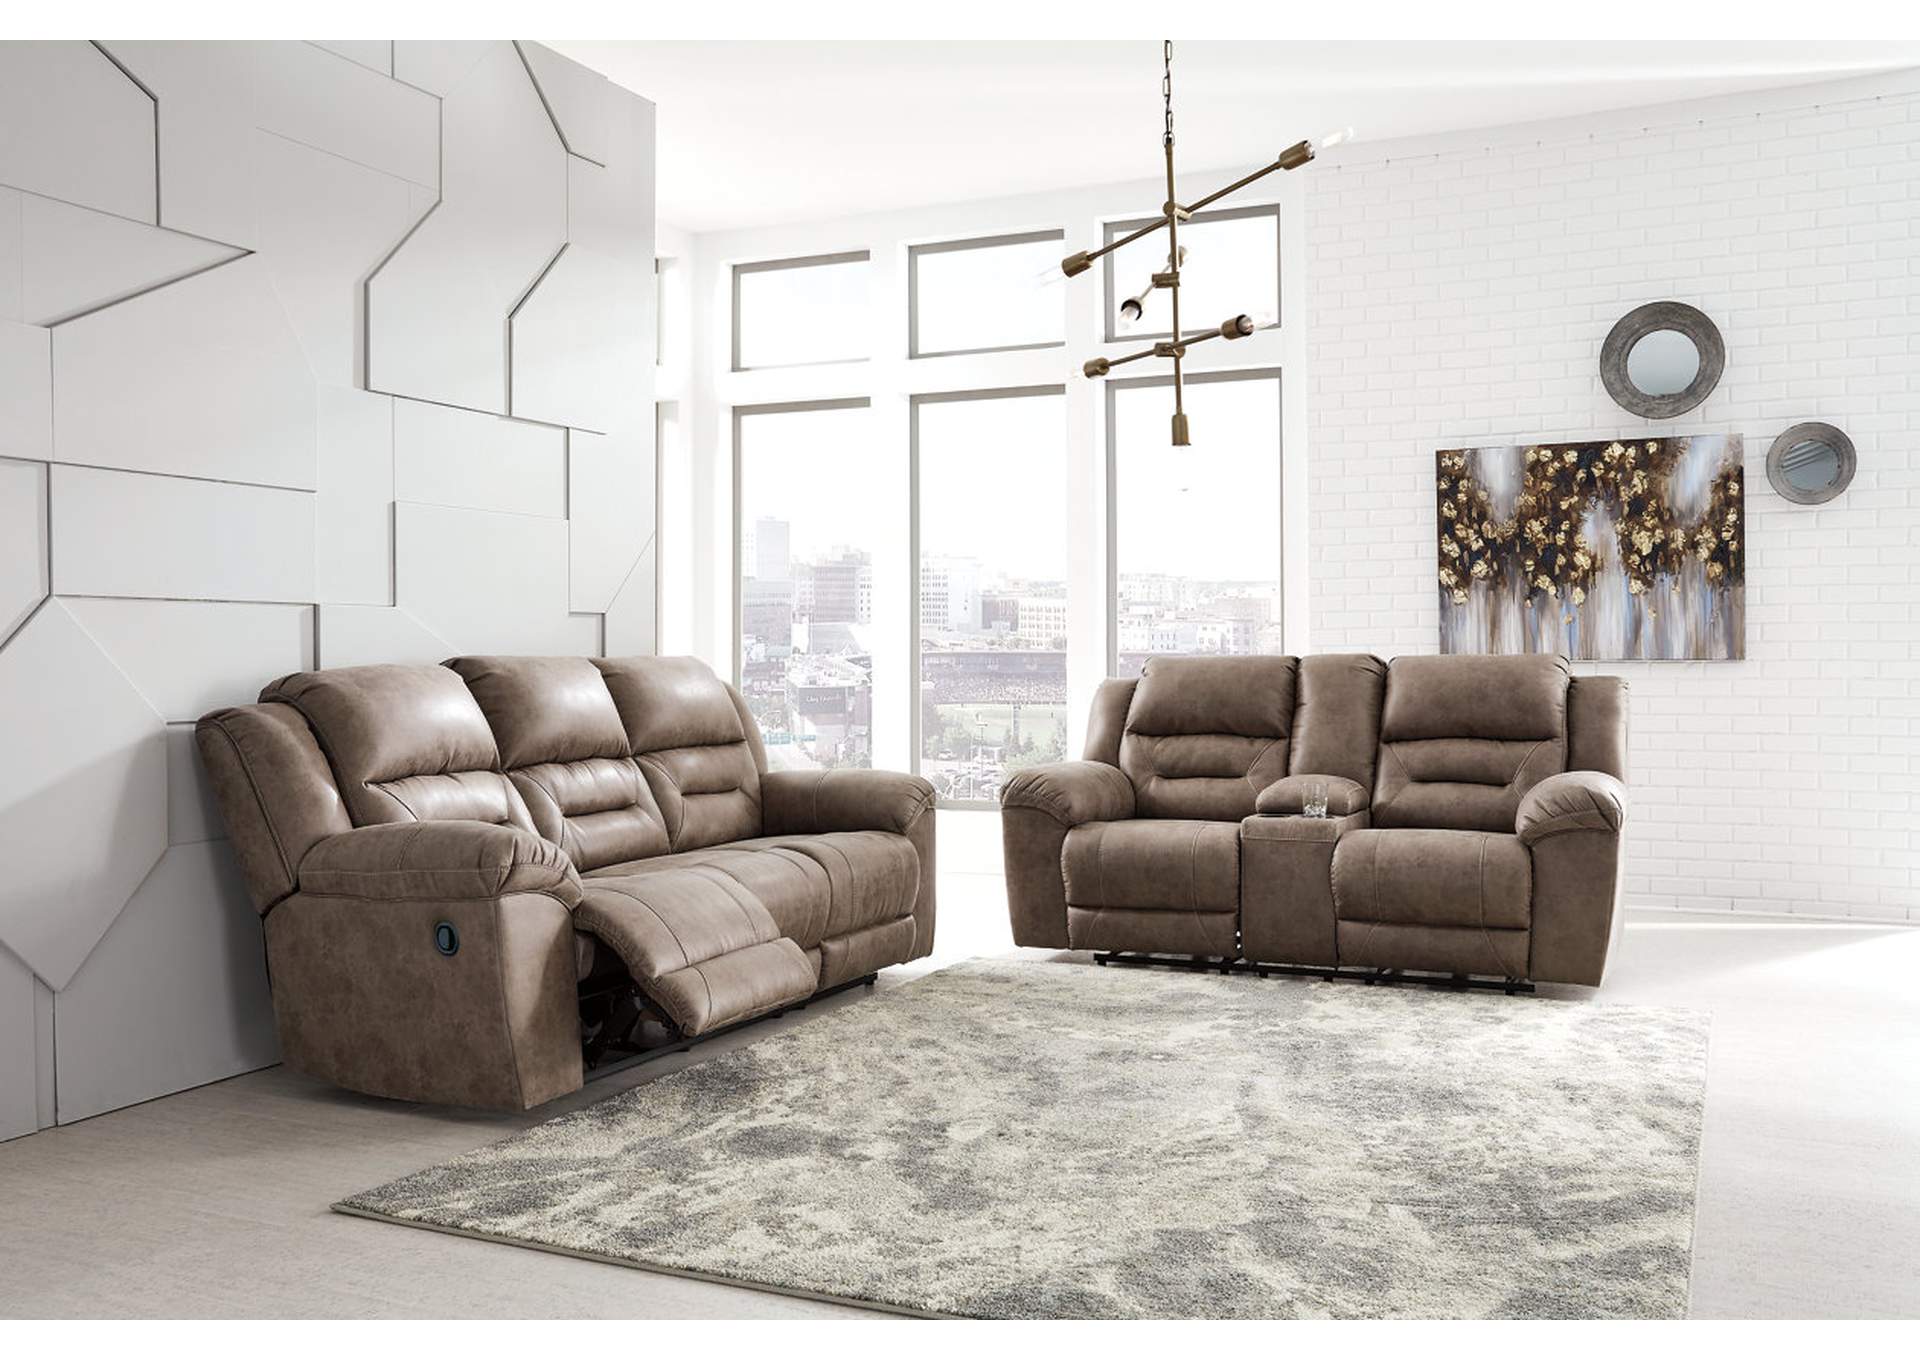 Stoneland Reclining Sofa,Signature Design By Ashley